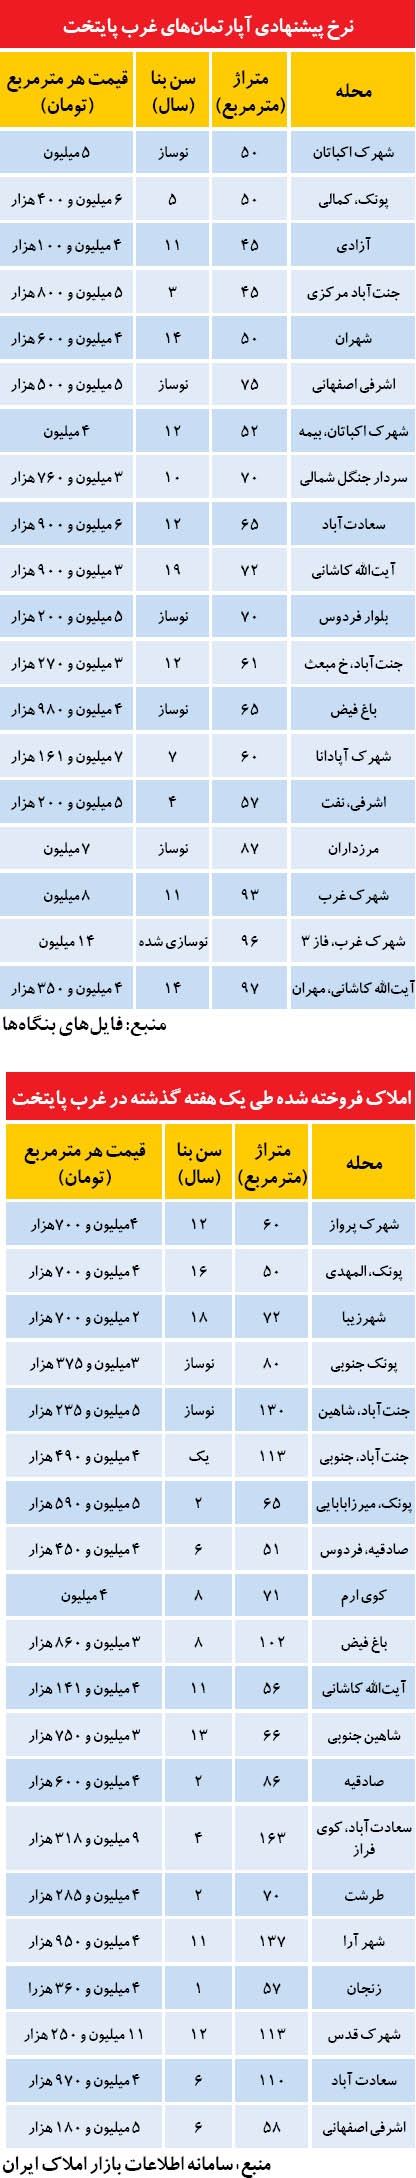 تازه ترین نرخ مسکن در غرب تهران